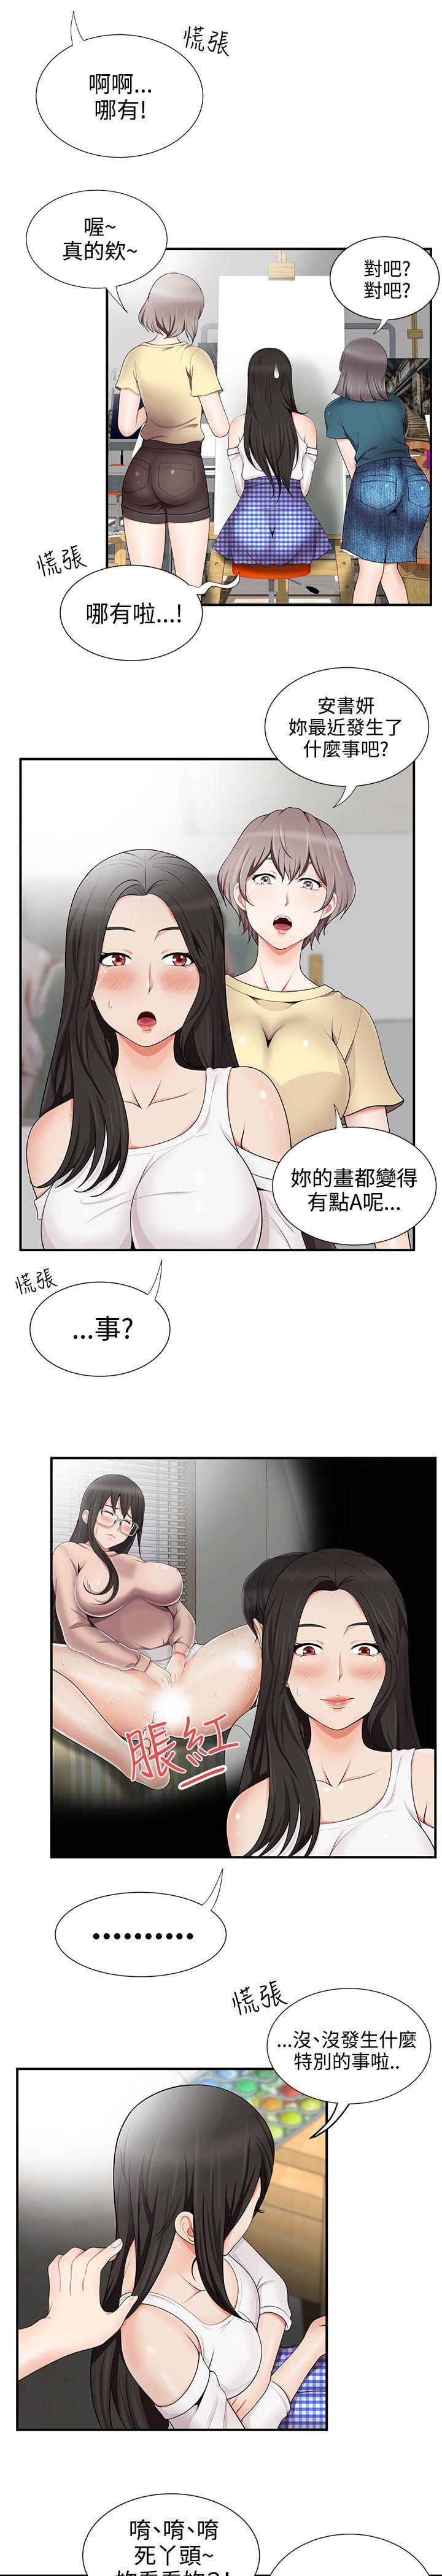 韩国污漫画 無法自拔的口紅膠 第15话 13